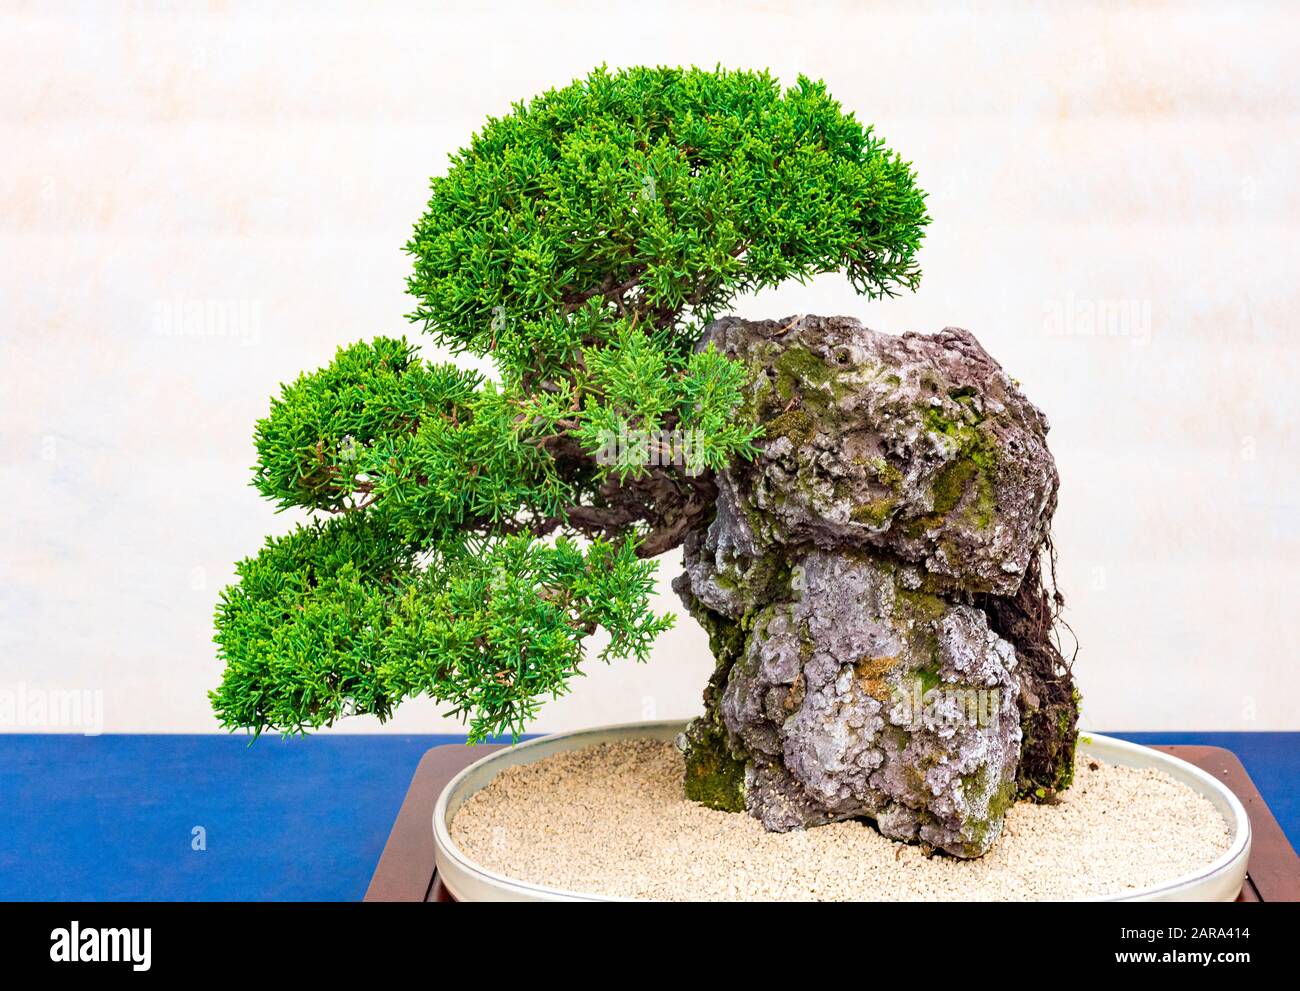 Un petit bonsai dans un pot en céramique. Bonsai -ishizuki- L'Un des styles les plus durs de bonsai à se développer. Banque D'Images